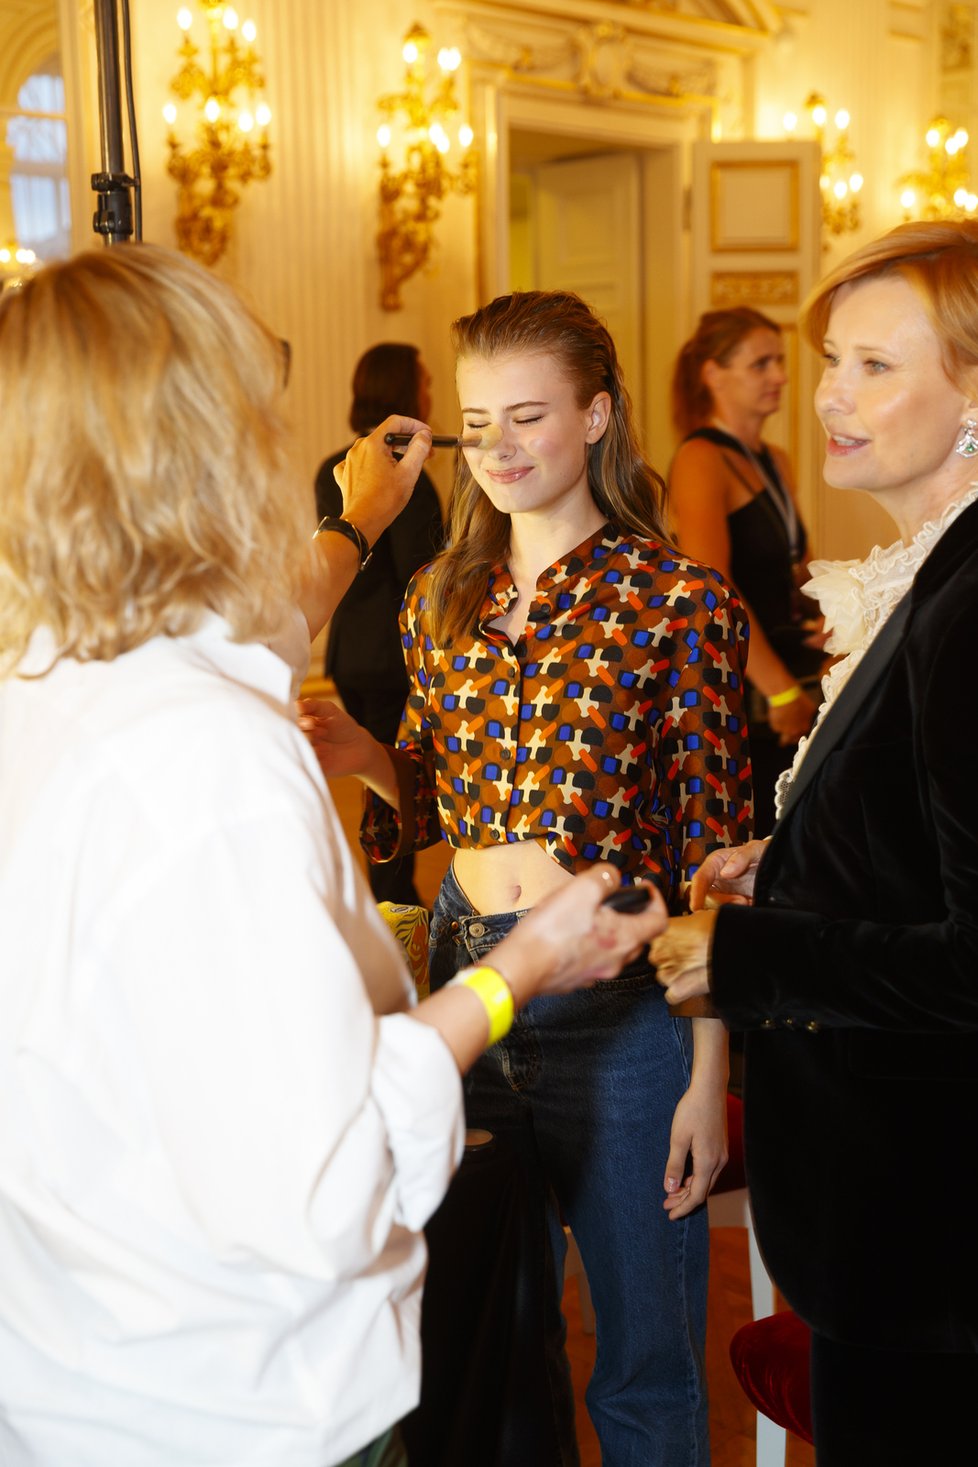 Finále Elite Model Look 2022 na Pražském hradě: Jitka Schneiderová s dcerou